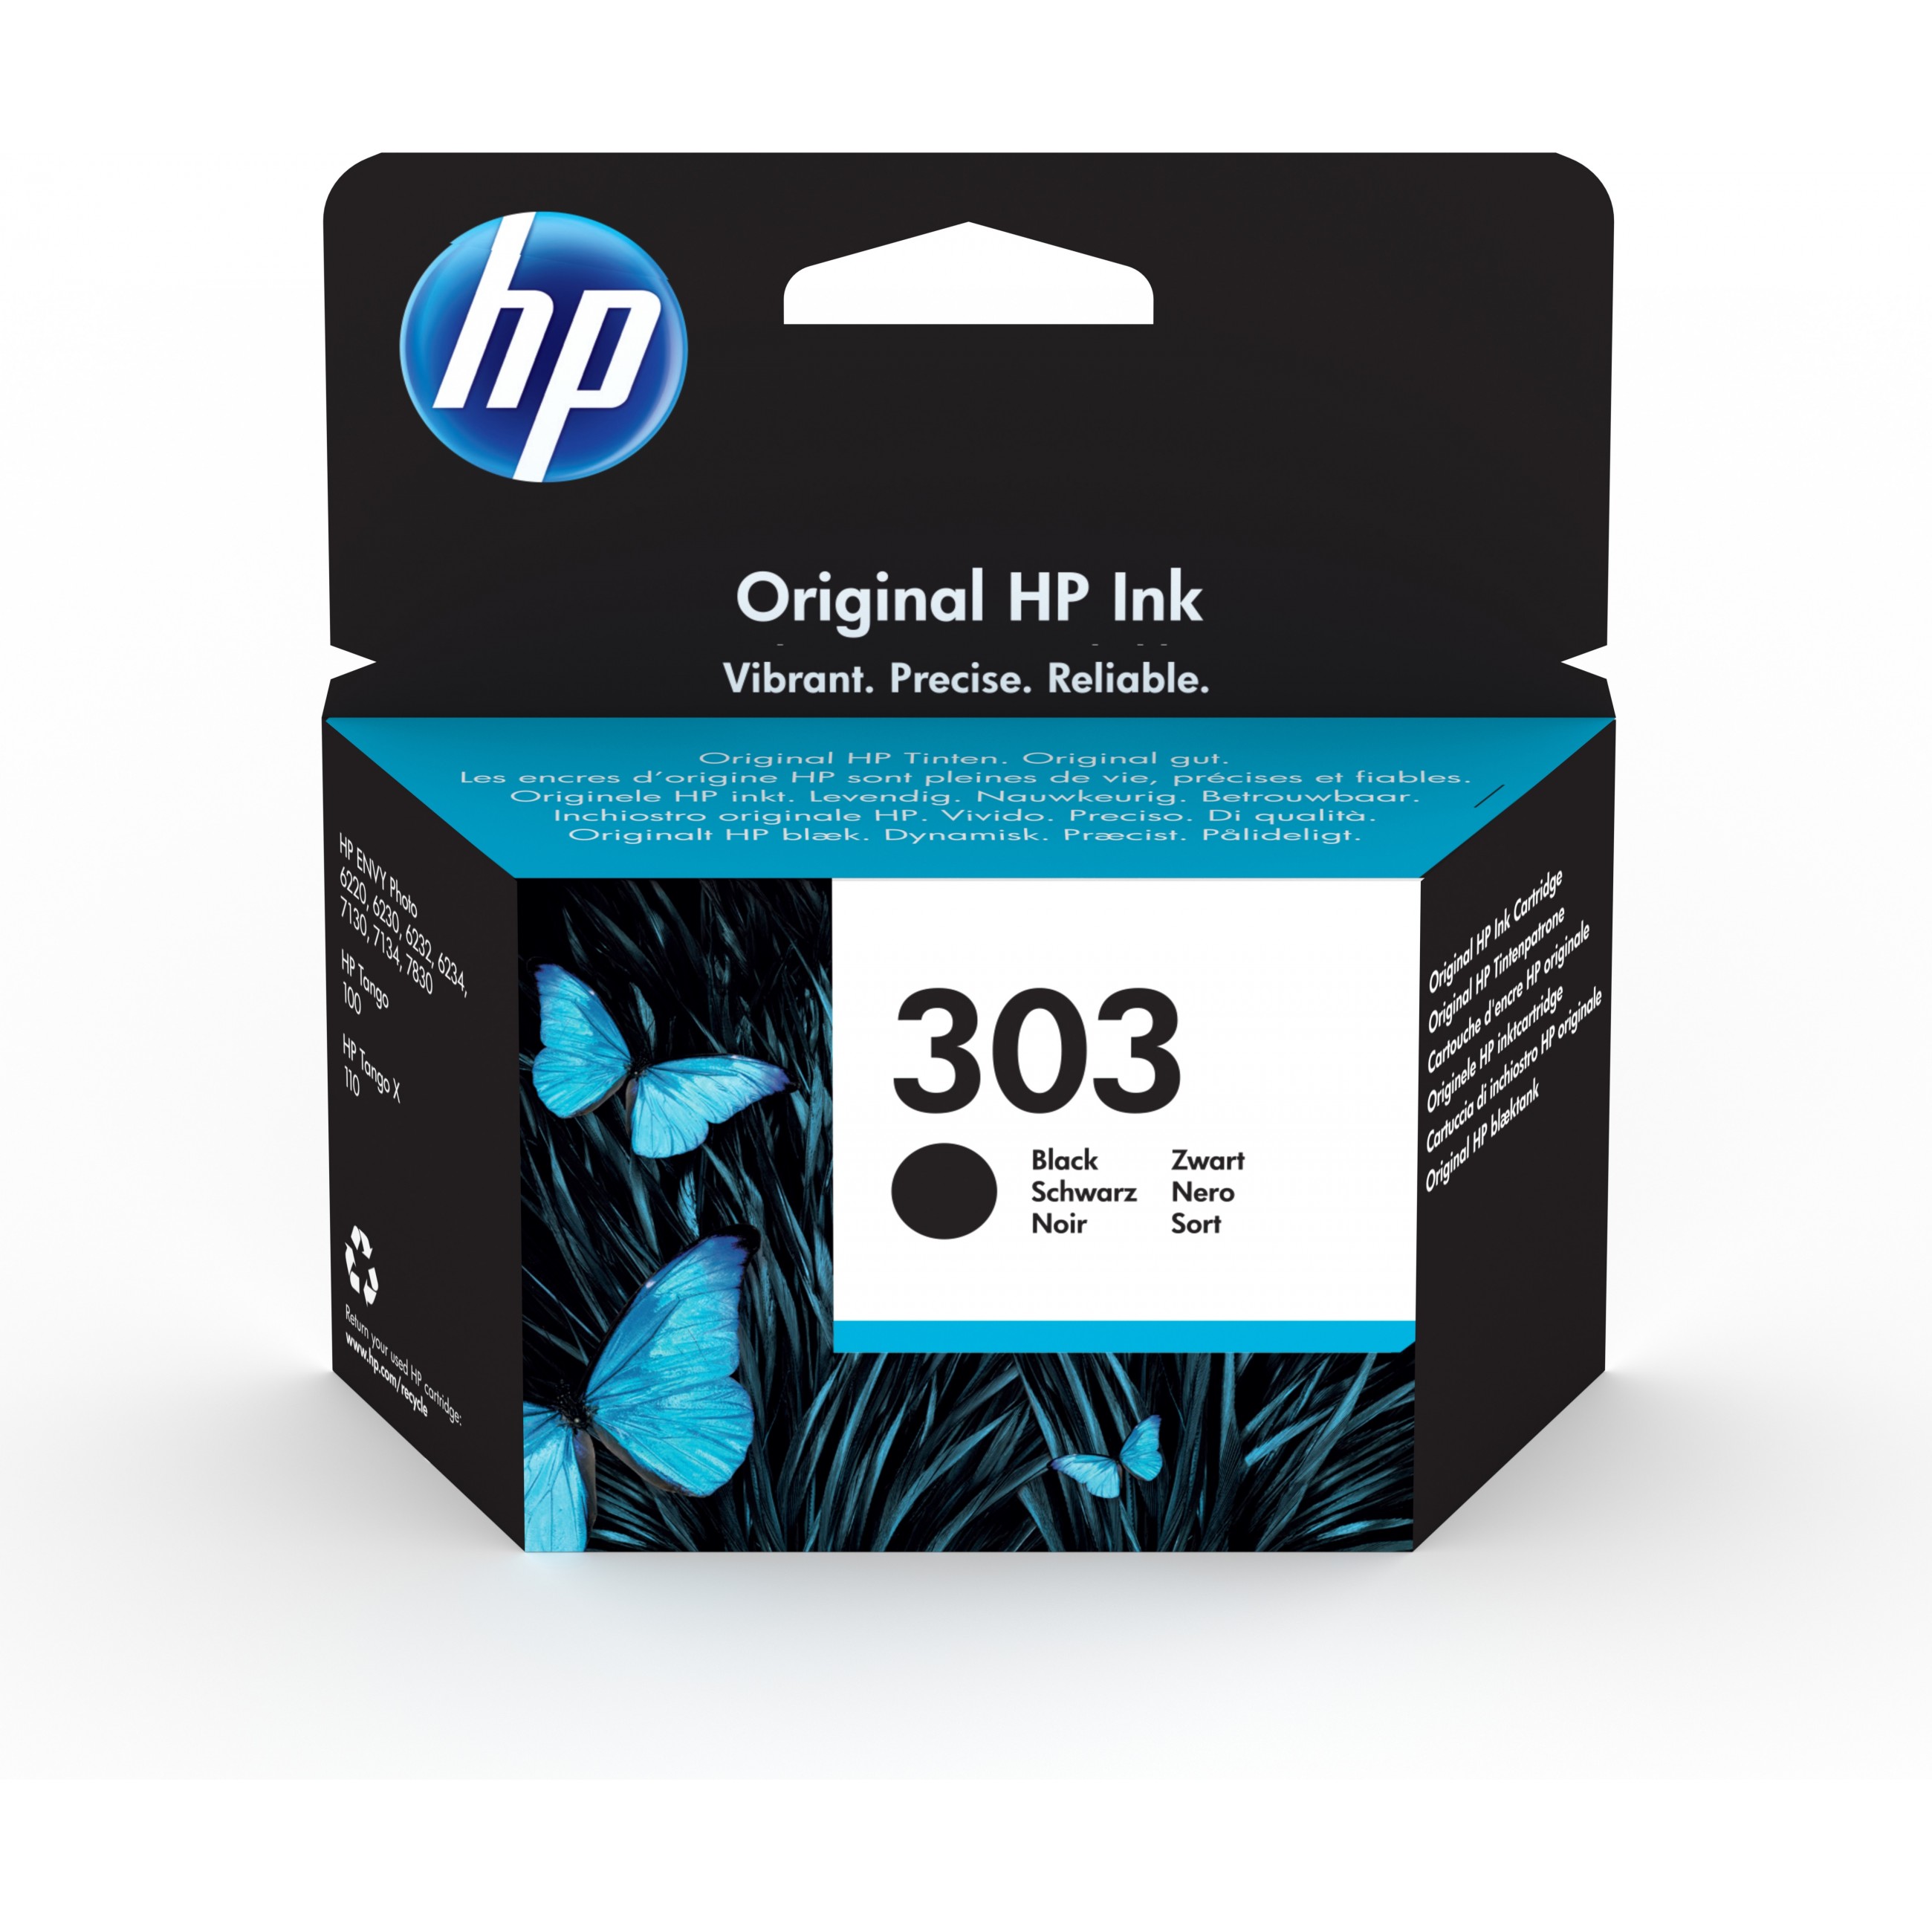 HP 303 Black Original ink cartridge - T6N02AE#UUS